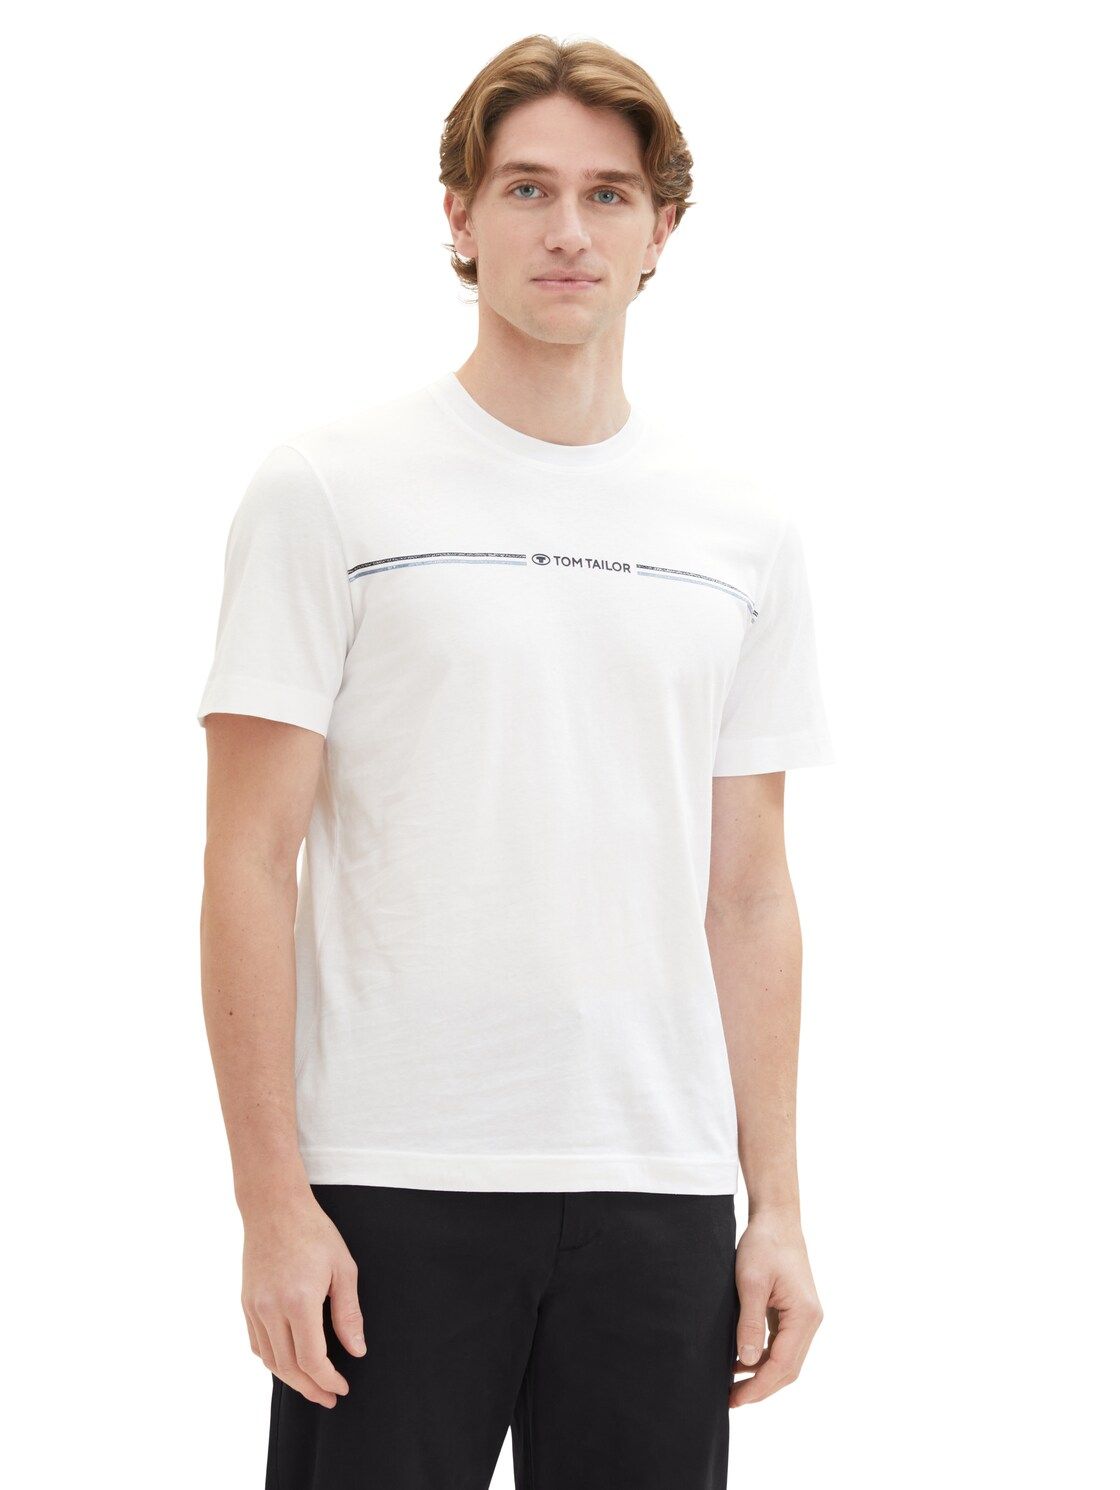 Tom Tailor T-shirt met print, White